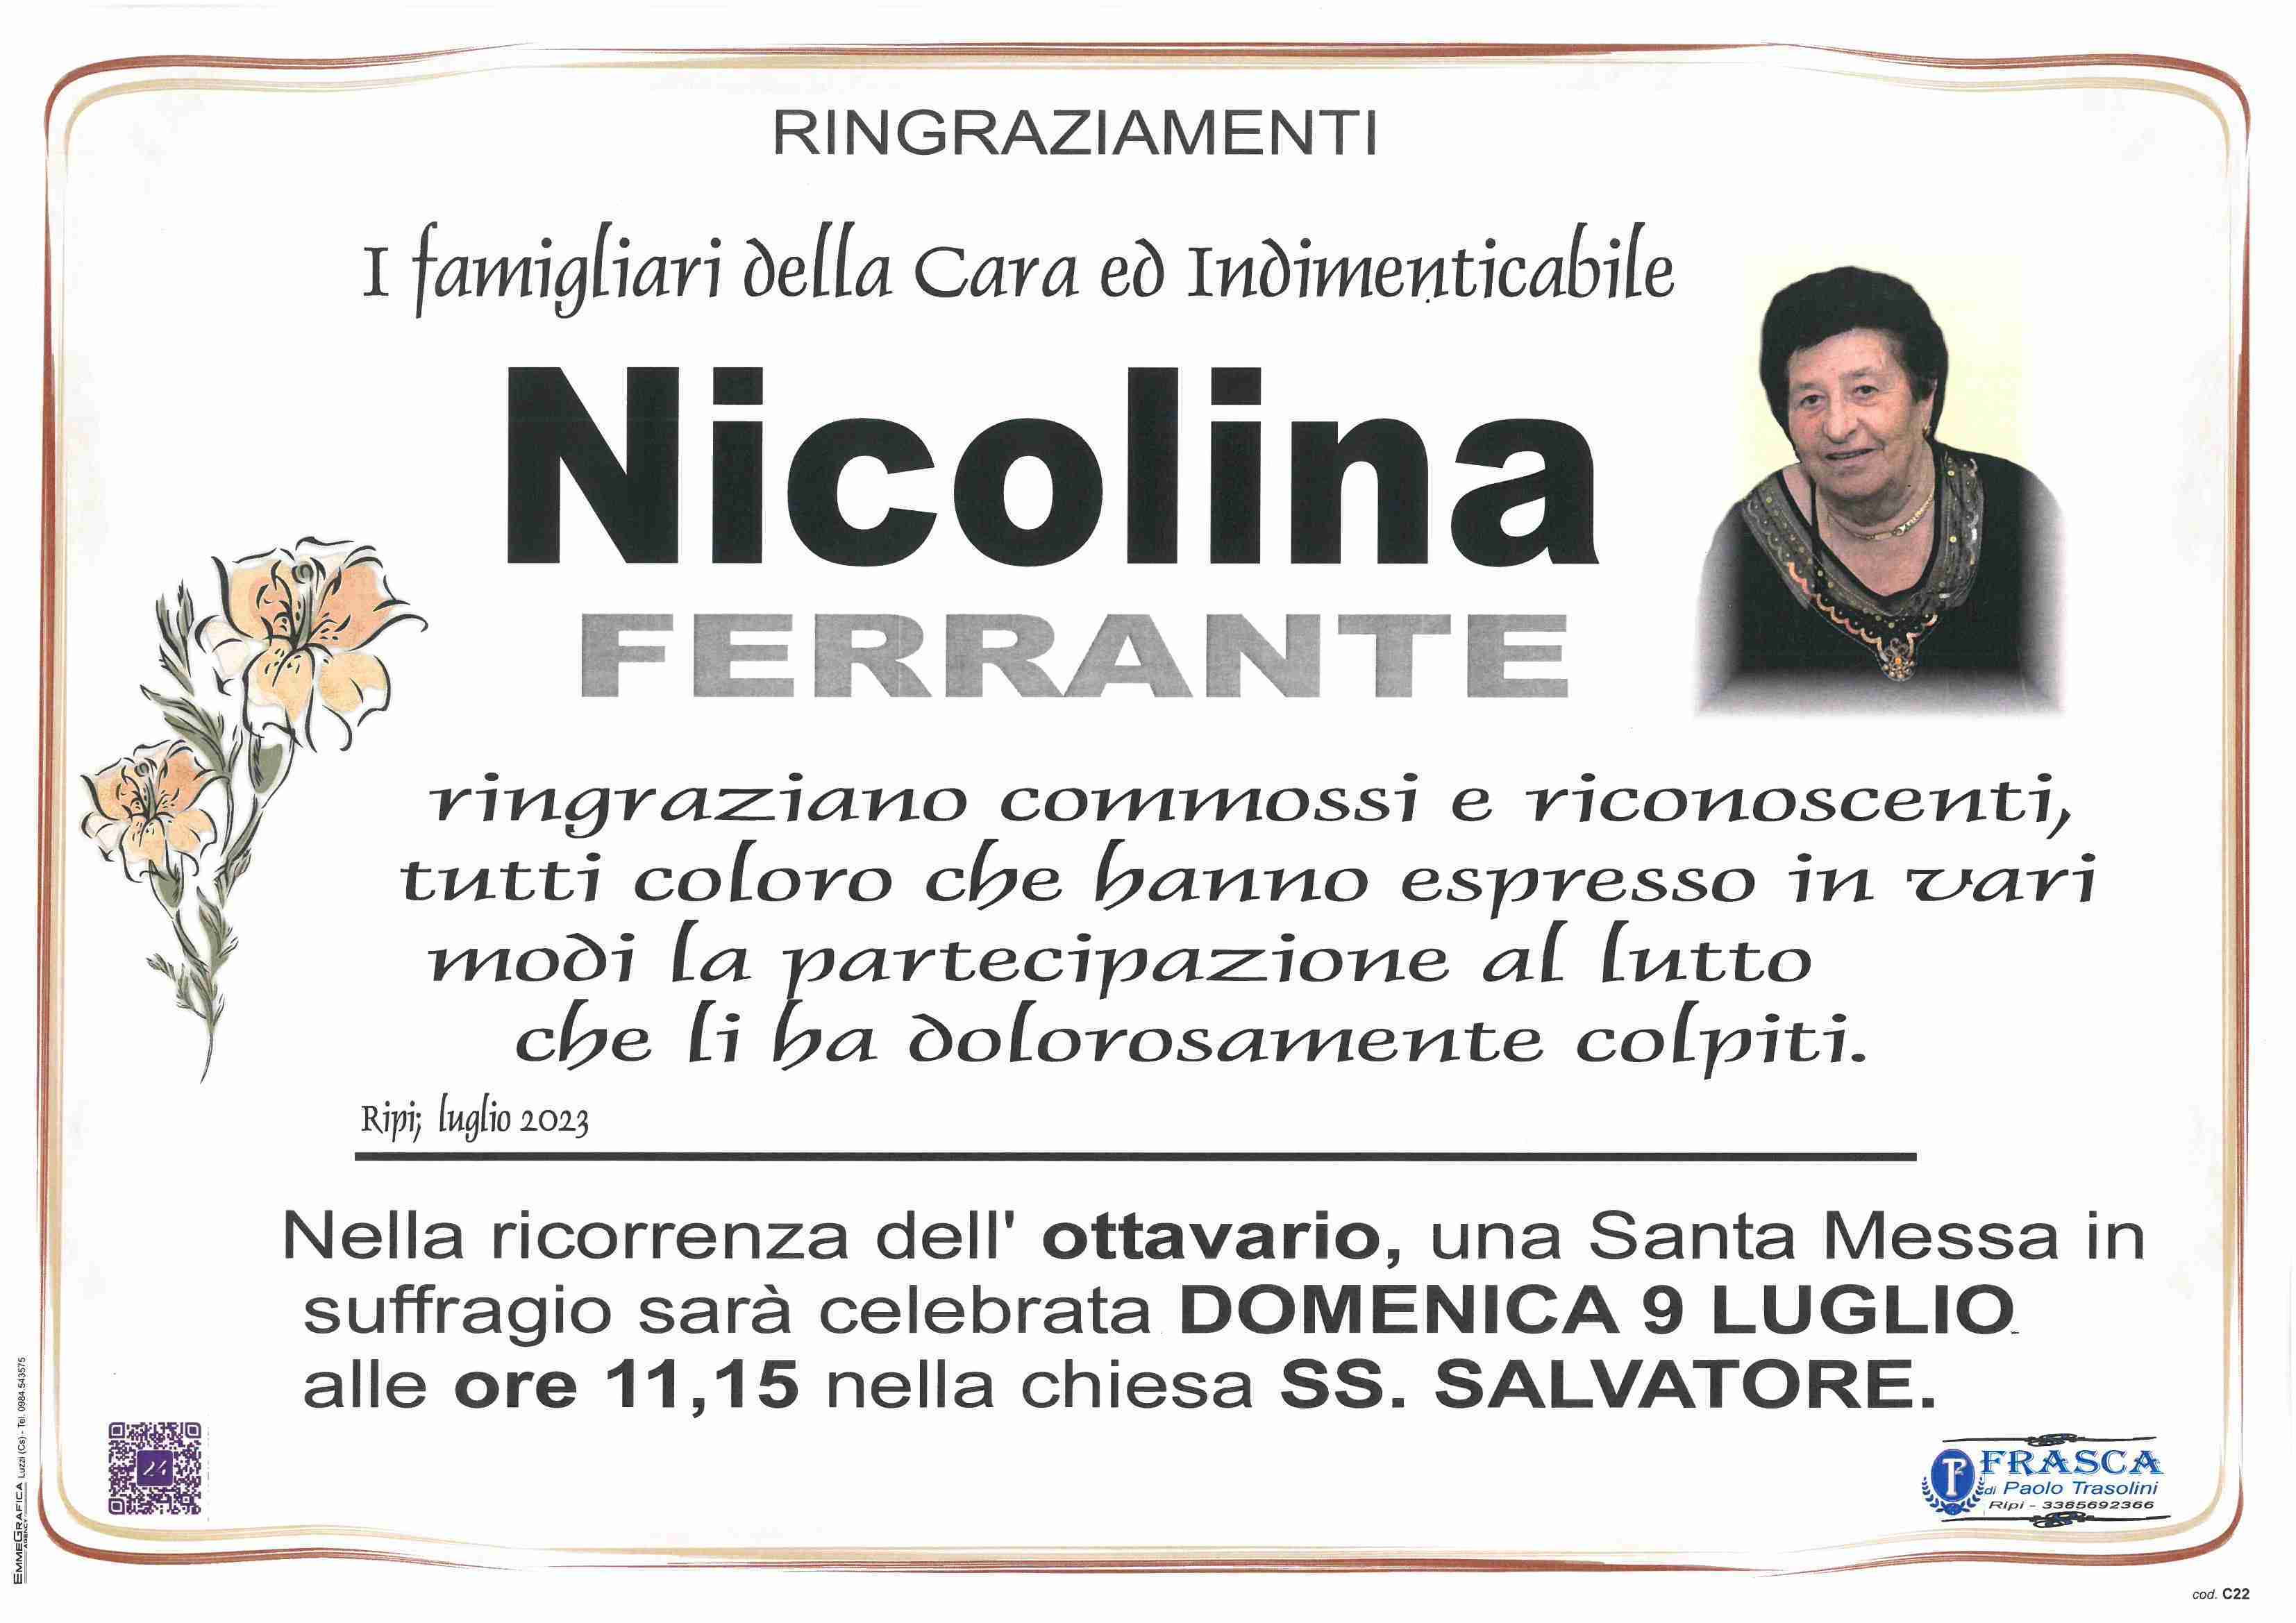 Nicolina Ferrante